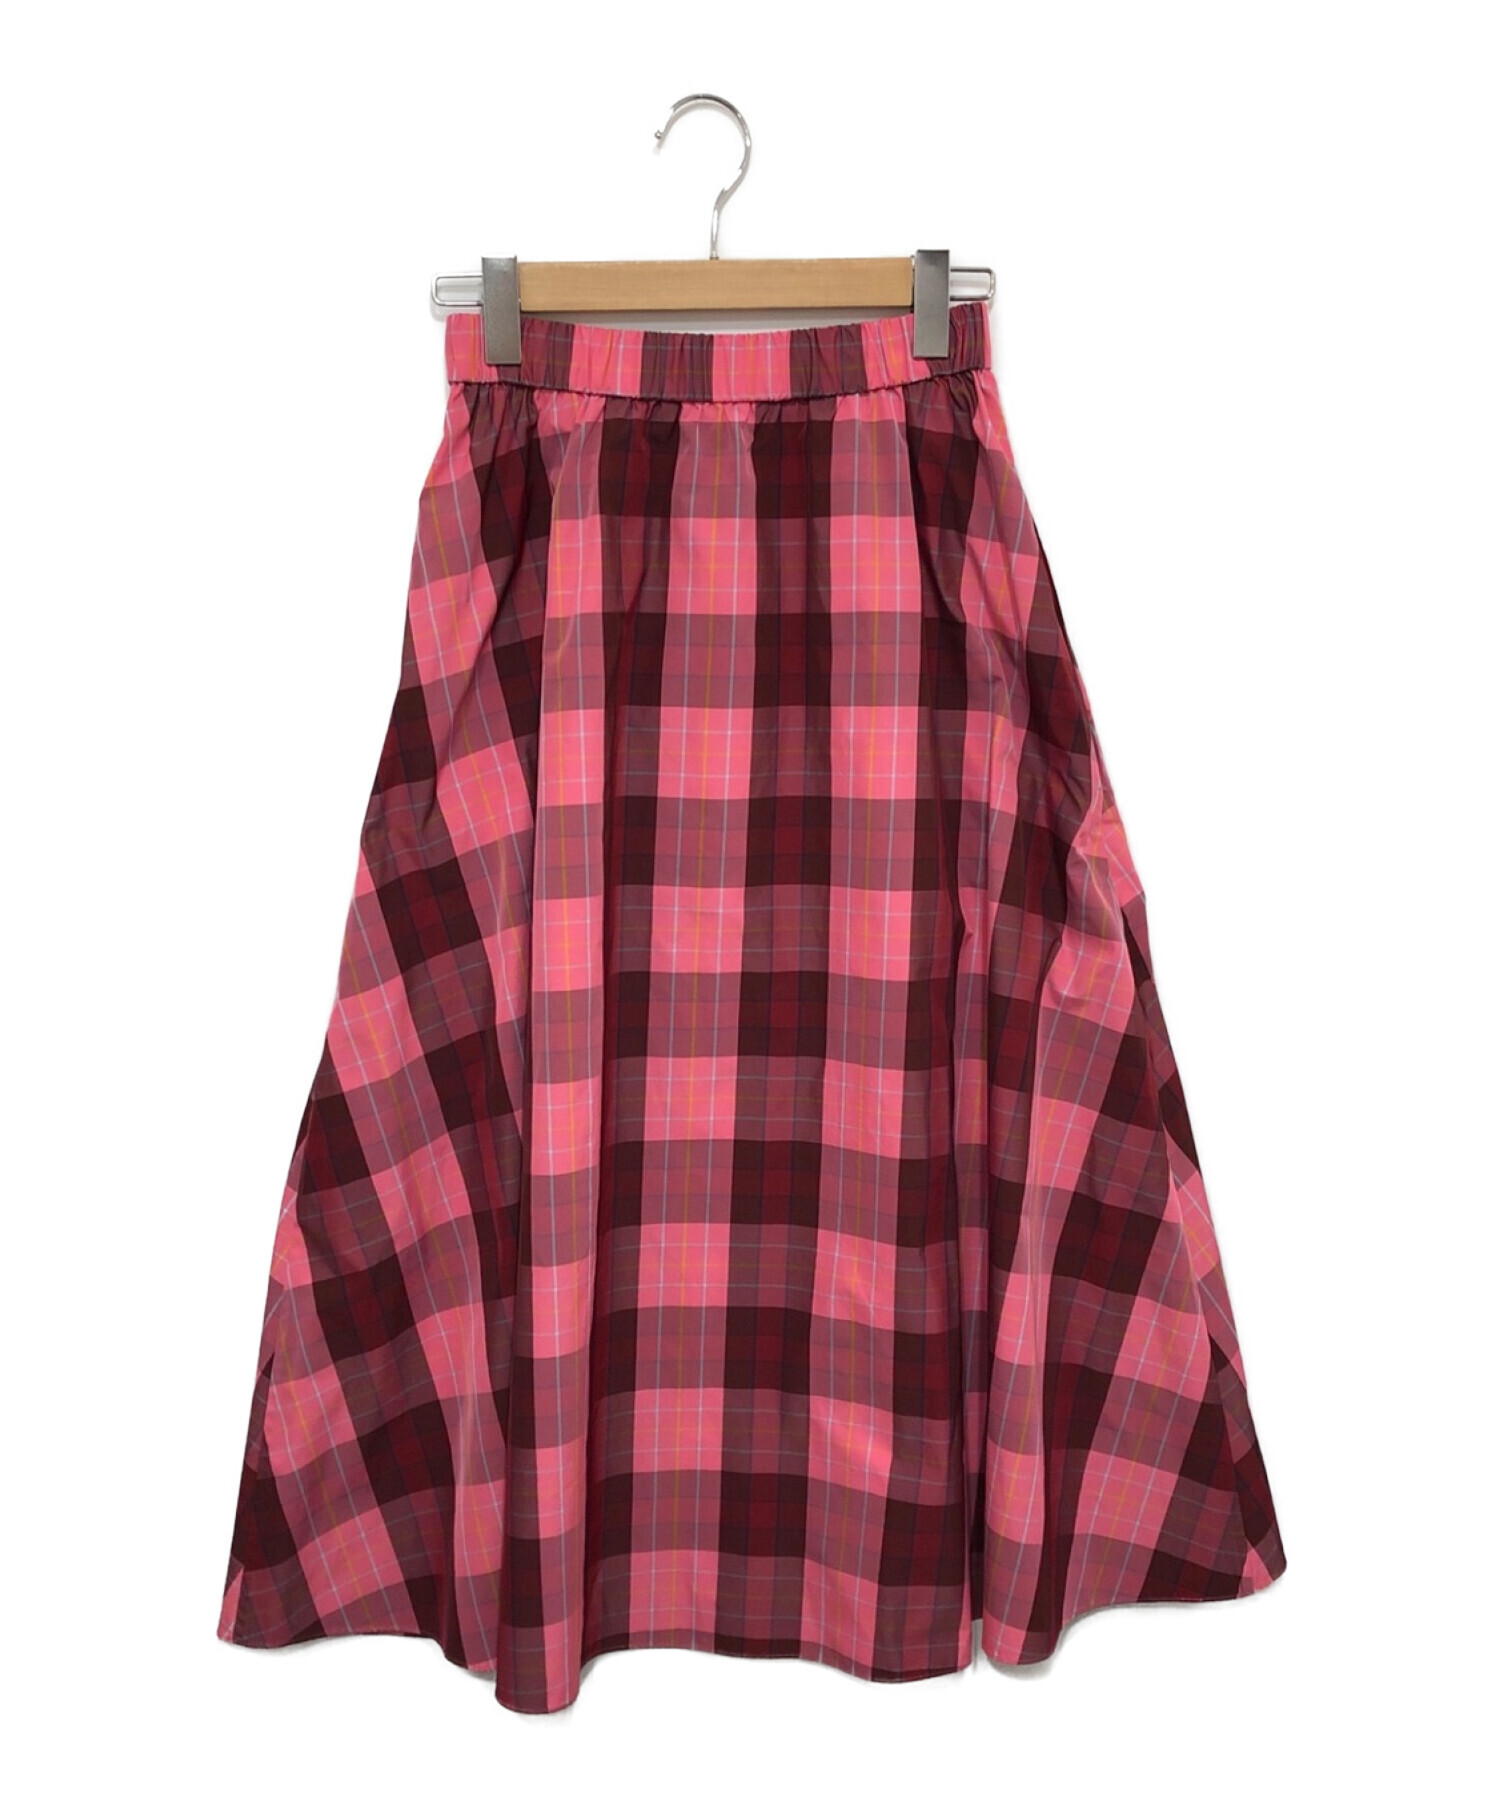 ケイトスペード スカート - ひざ丈スカート